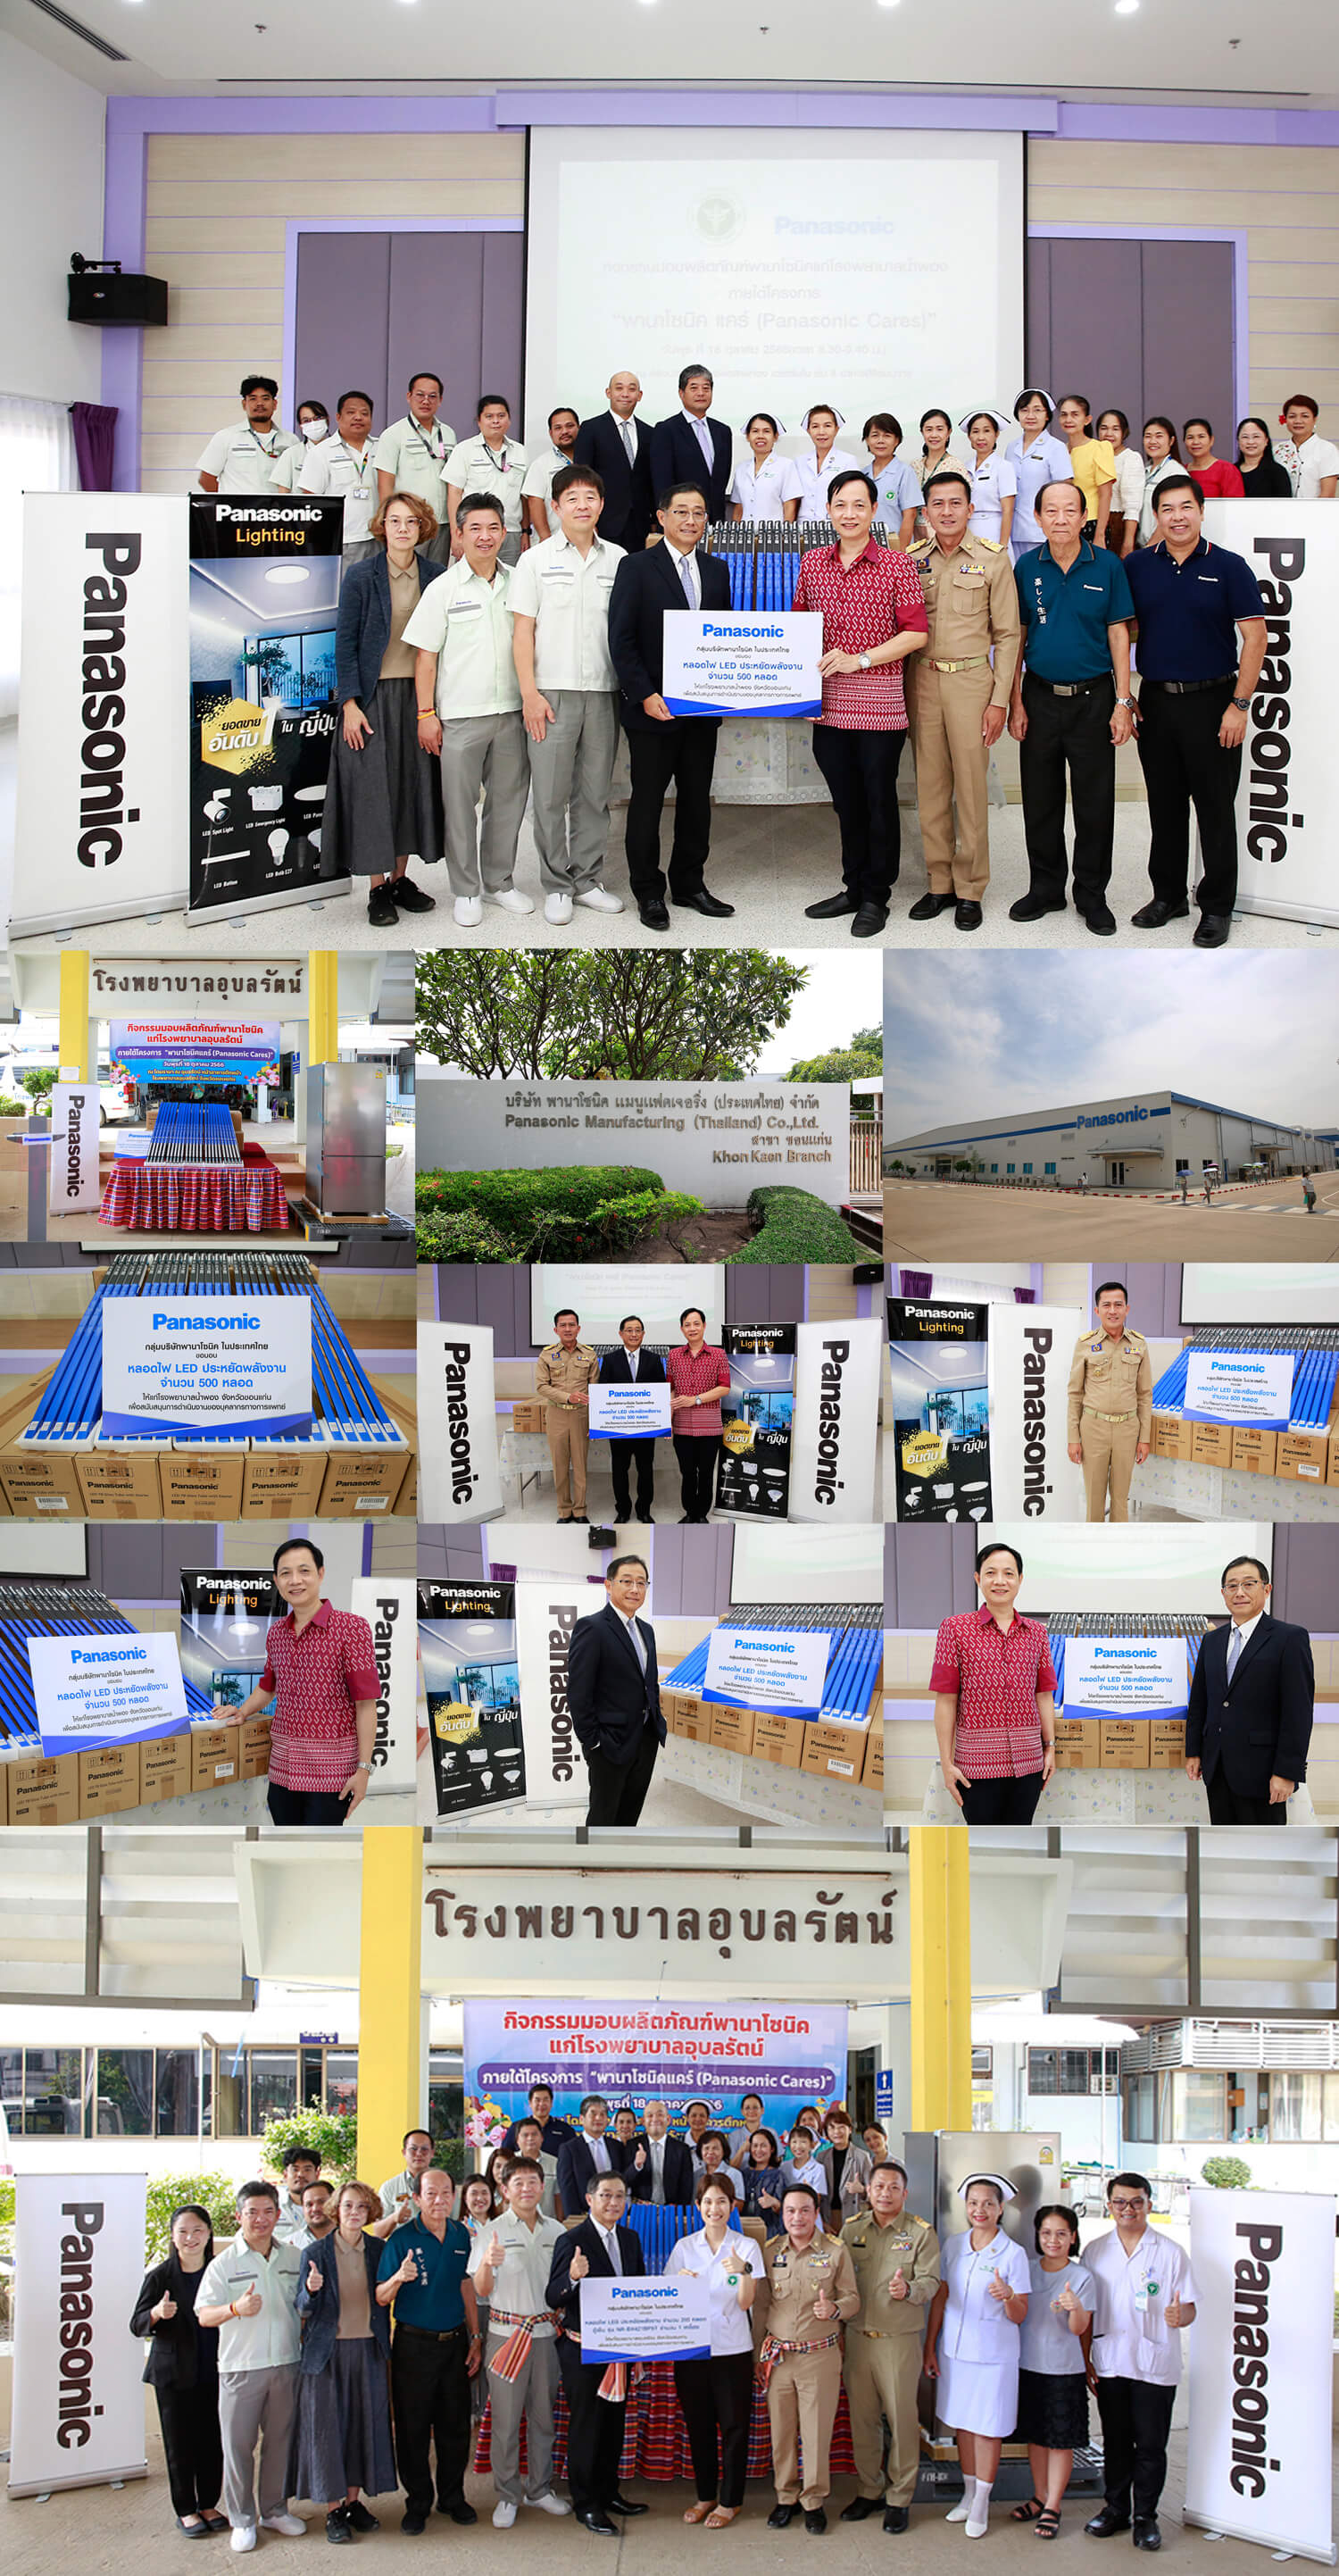 พานาโซนิค ปั้นโครงการเพื่อสังคมไทย “พานาโซนิค แคร์ (Panasonic Cares)”  นำร่องมอบผลิตภัณฑ์สนับสนุนโรงพยาบาลจังหวัดขอนแก่น 